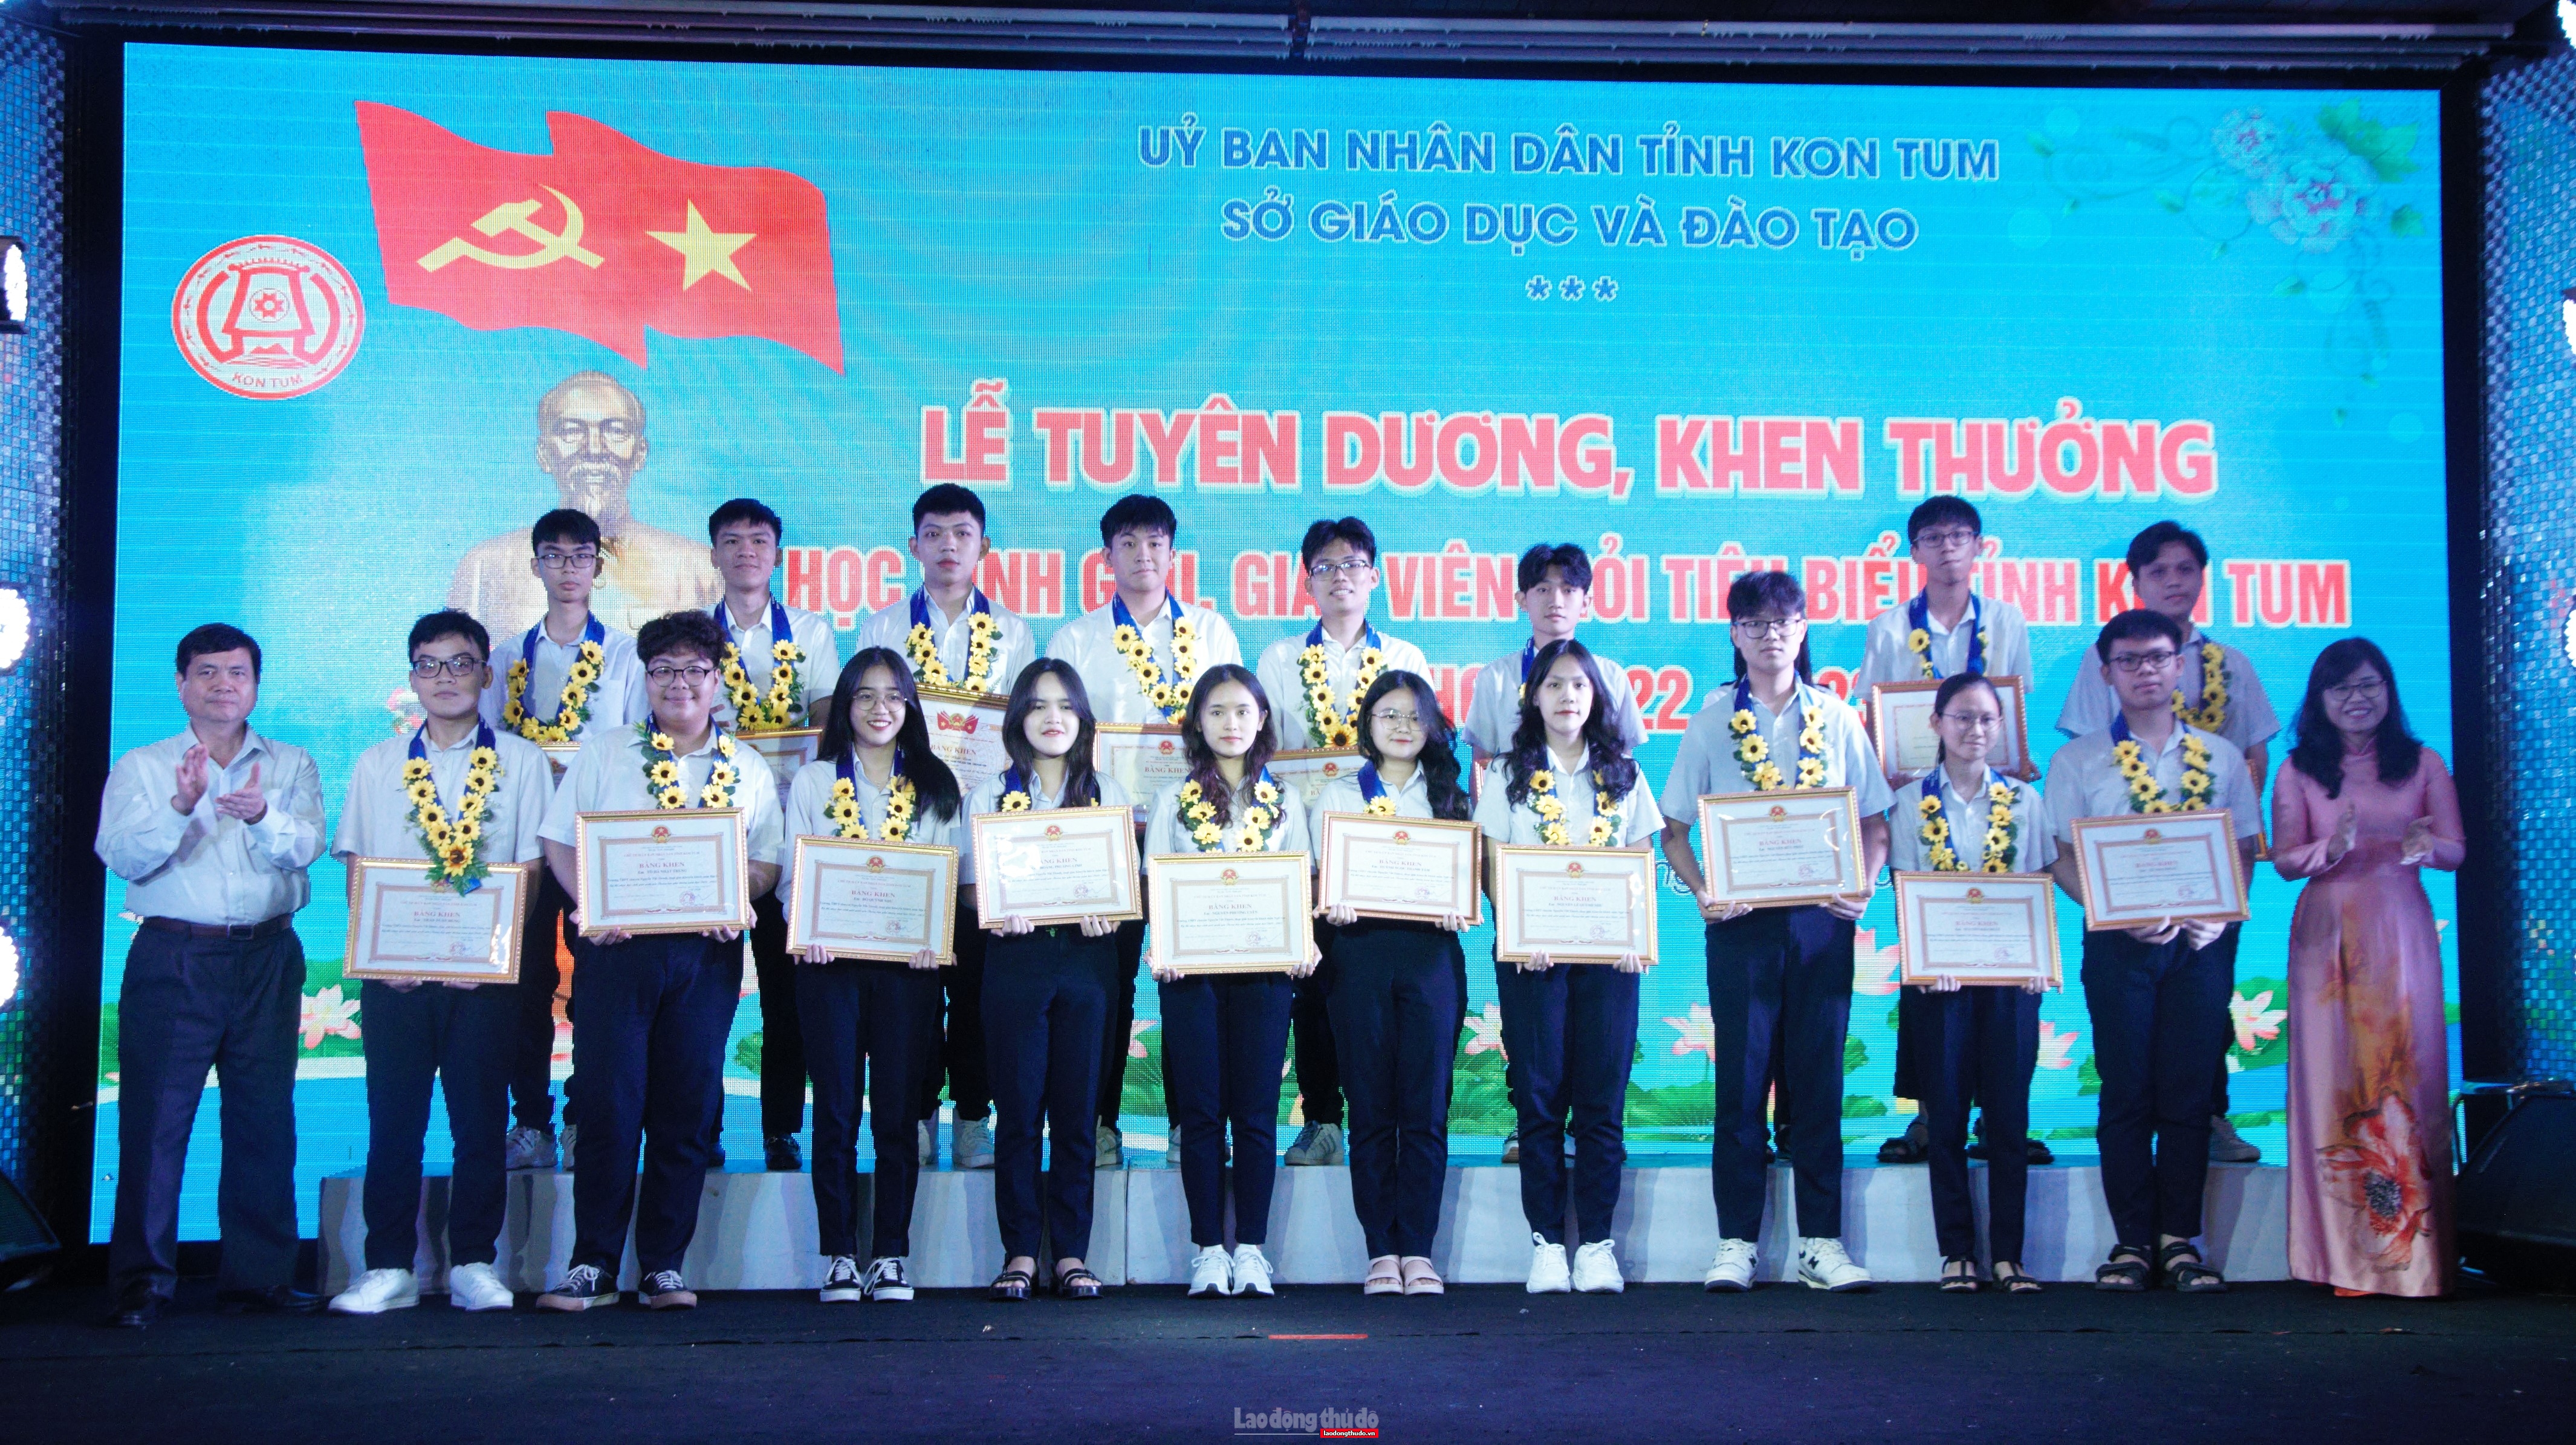 Tuyên dương 273 giáo viên, học sinh tiêu biểu xuất sắc tỉnh Kon Tum